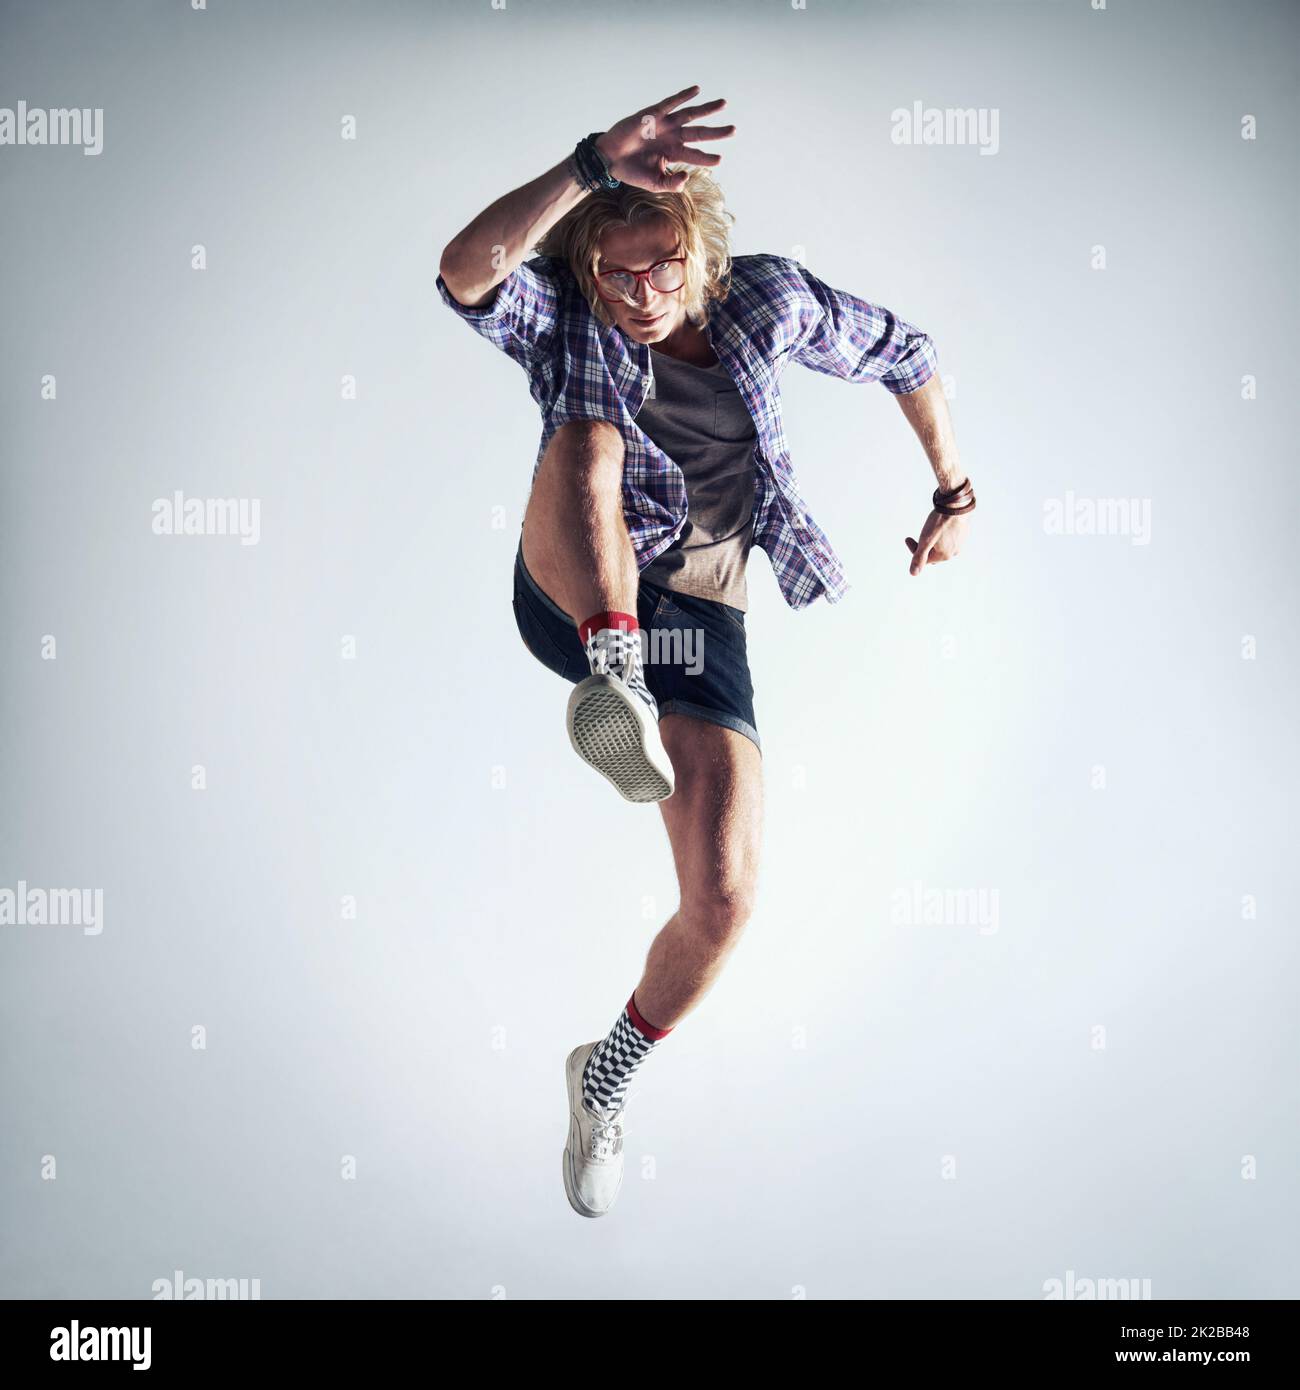 Er drückt sich durch Tanz aus. Aufnahme eines hübschen jungen Mannes, der vor grauem Hintergrund tanzt. Stockfoto